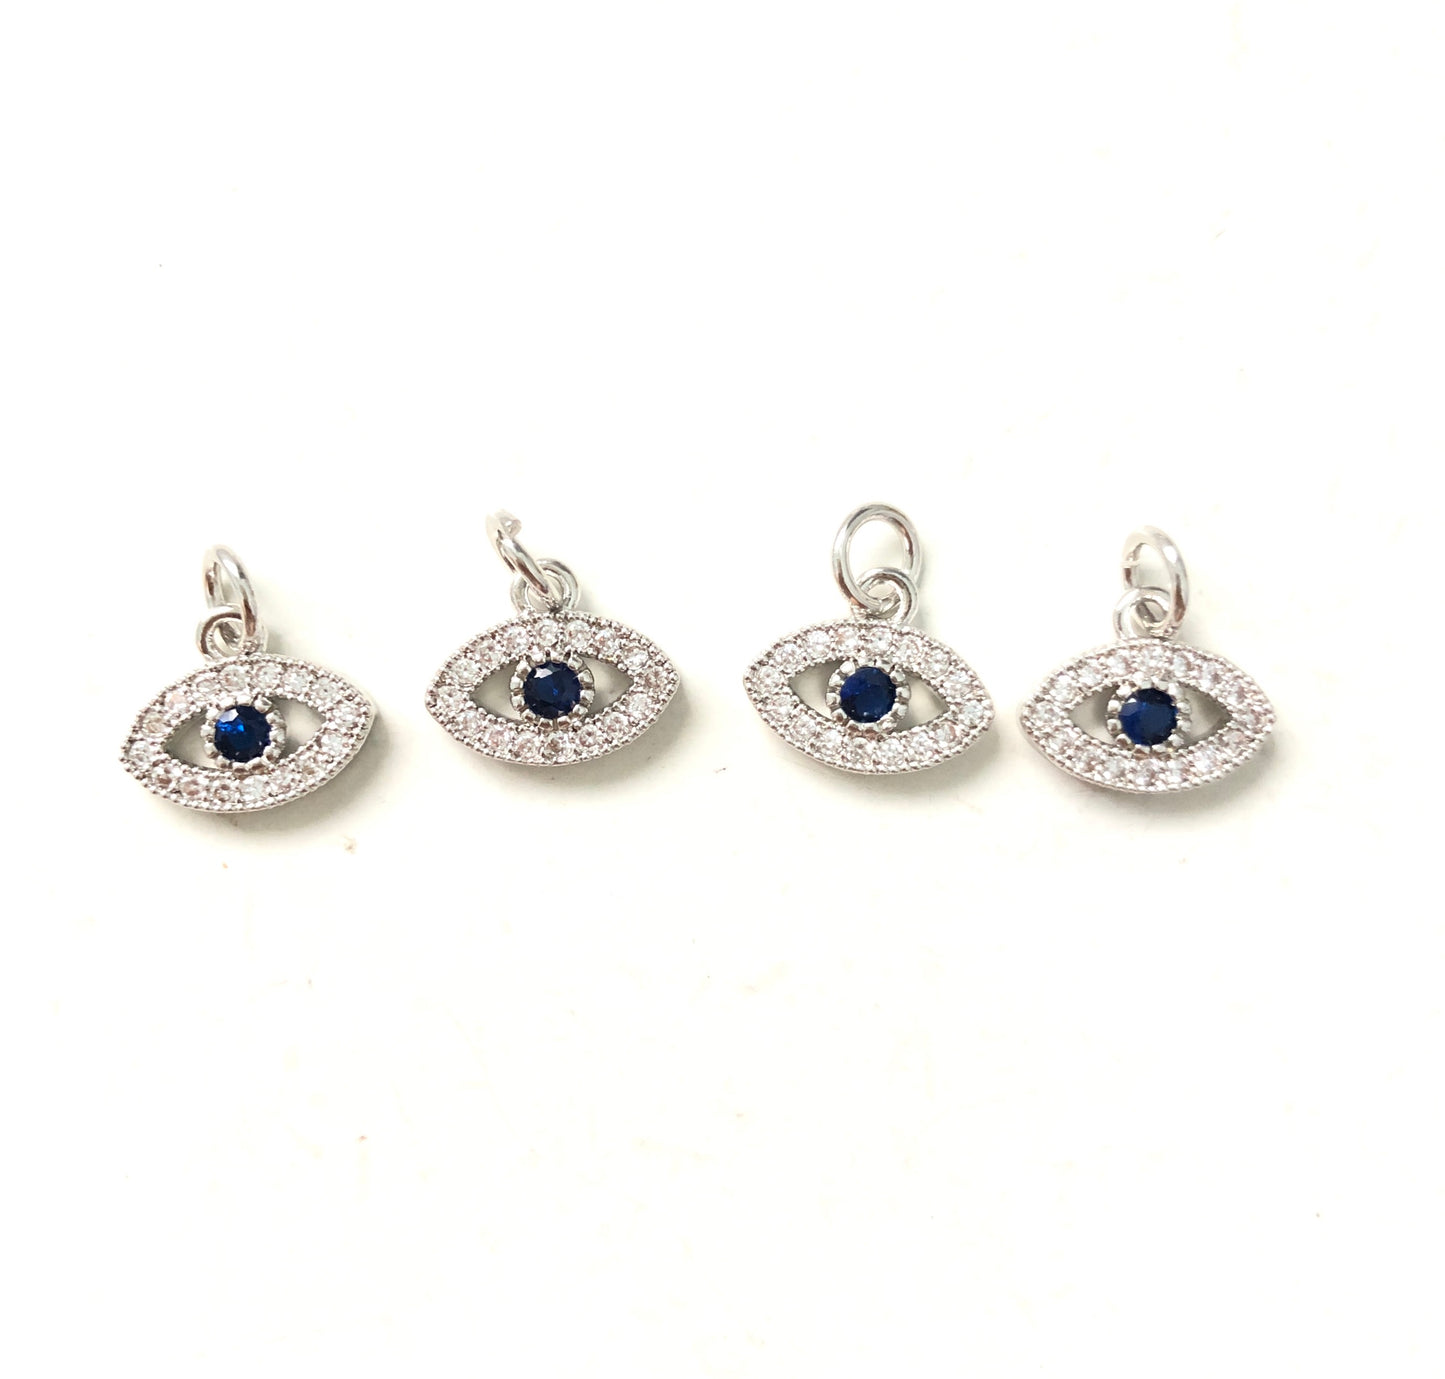 10pcs/lot 11*9mm CZ Paved Evil Eye Charms Silver CZ Paved Charms Evil Eyes Small Sizes Charms Beads Beyond